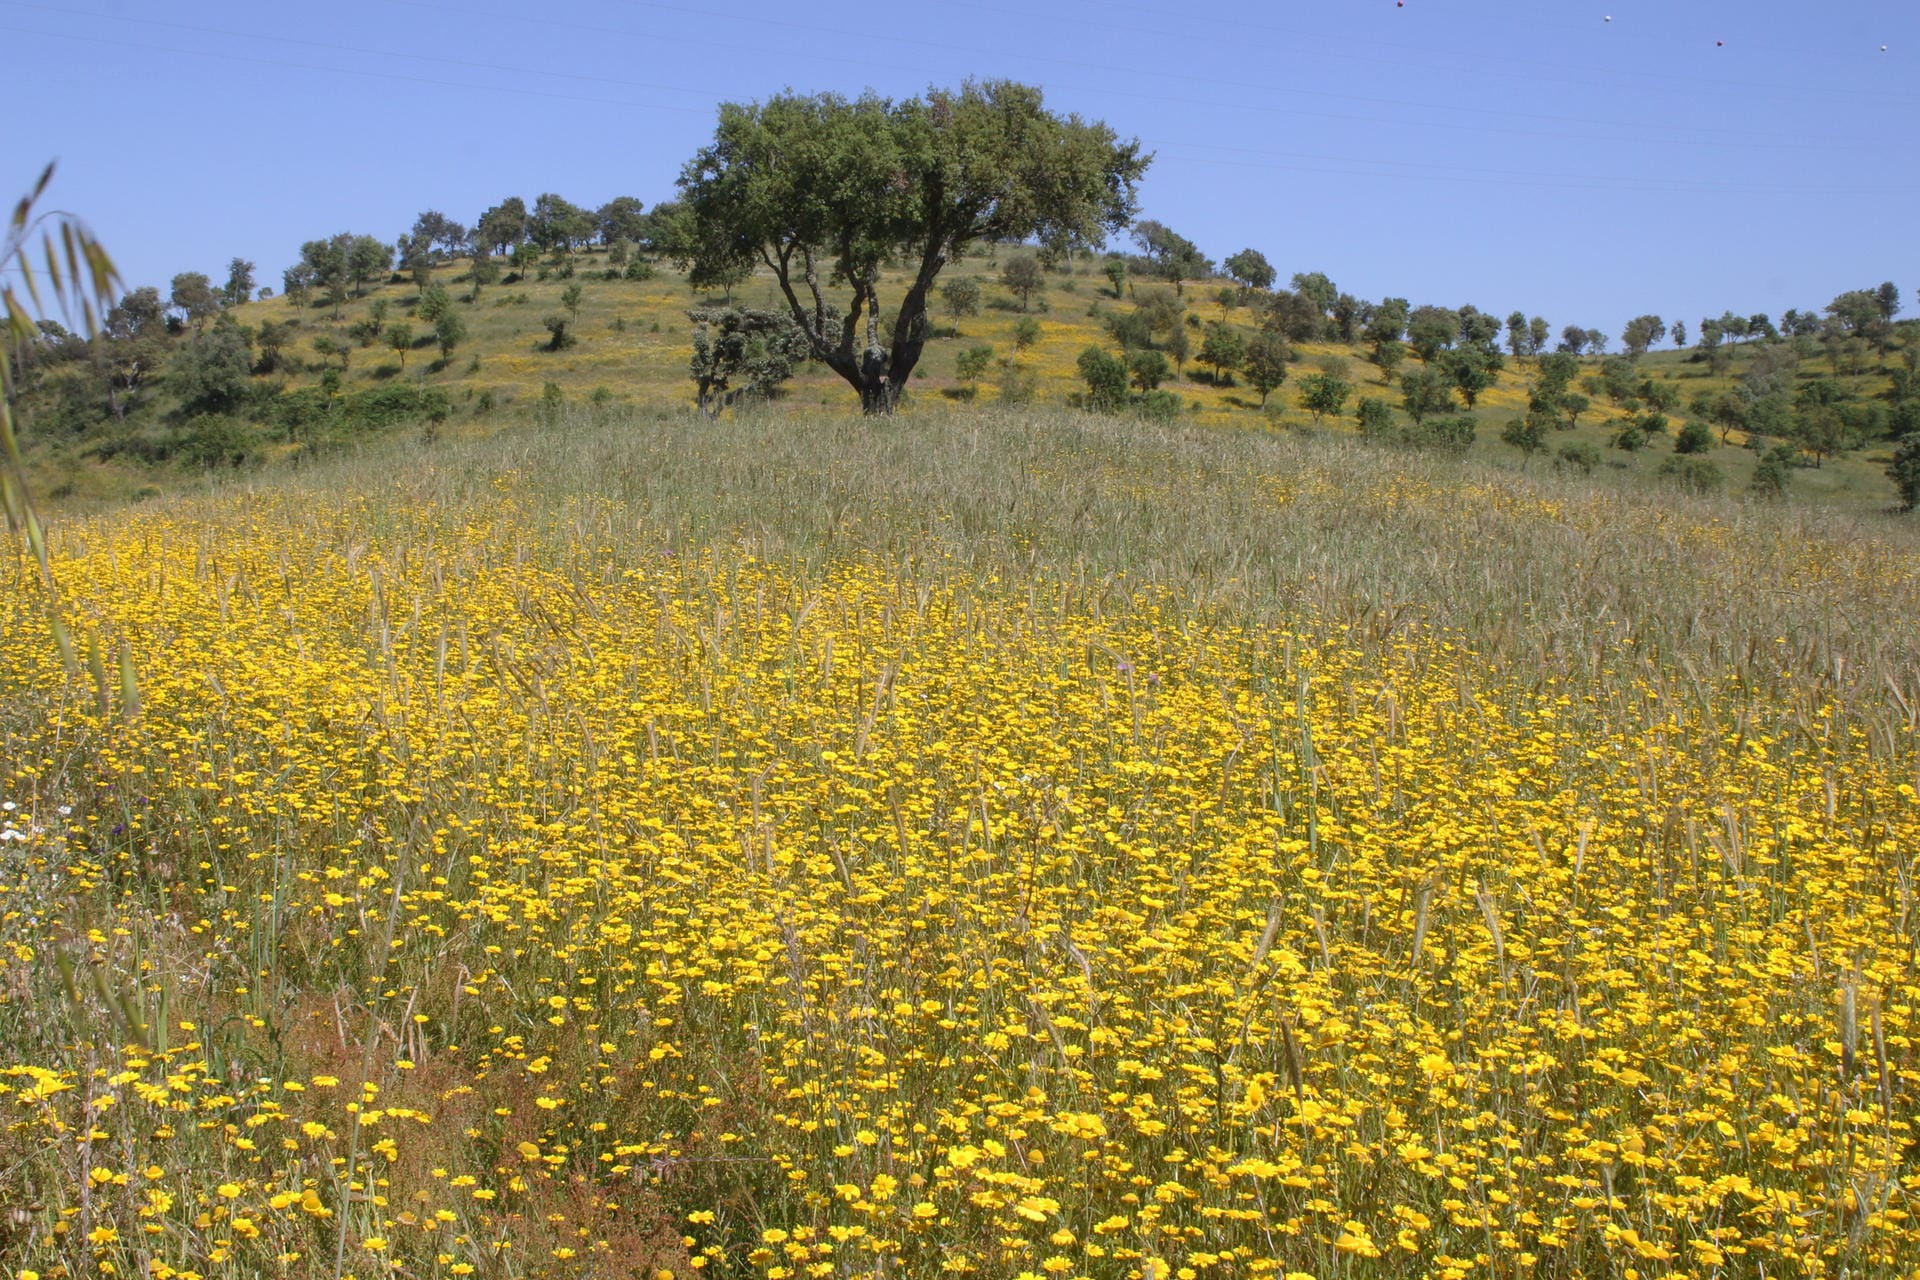 Knallbunte Blumenwiesen gibt es in der Provinz Alentejo. Menschenleer erscheint die Landschaft.